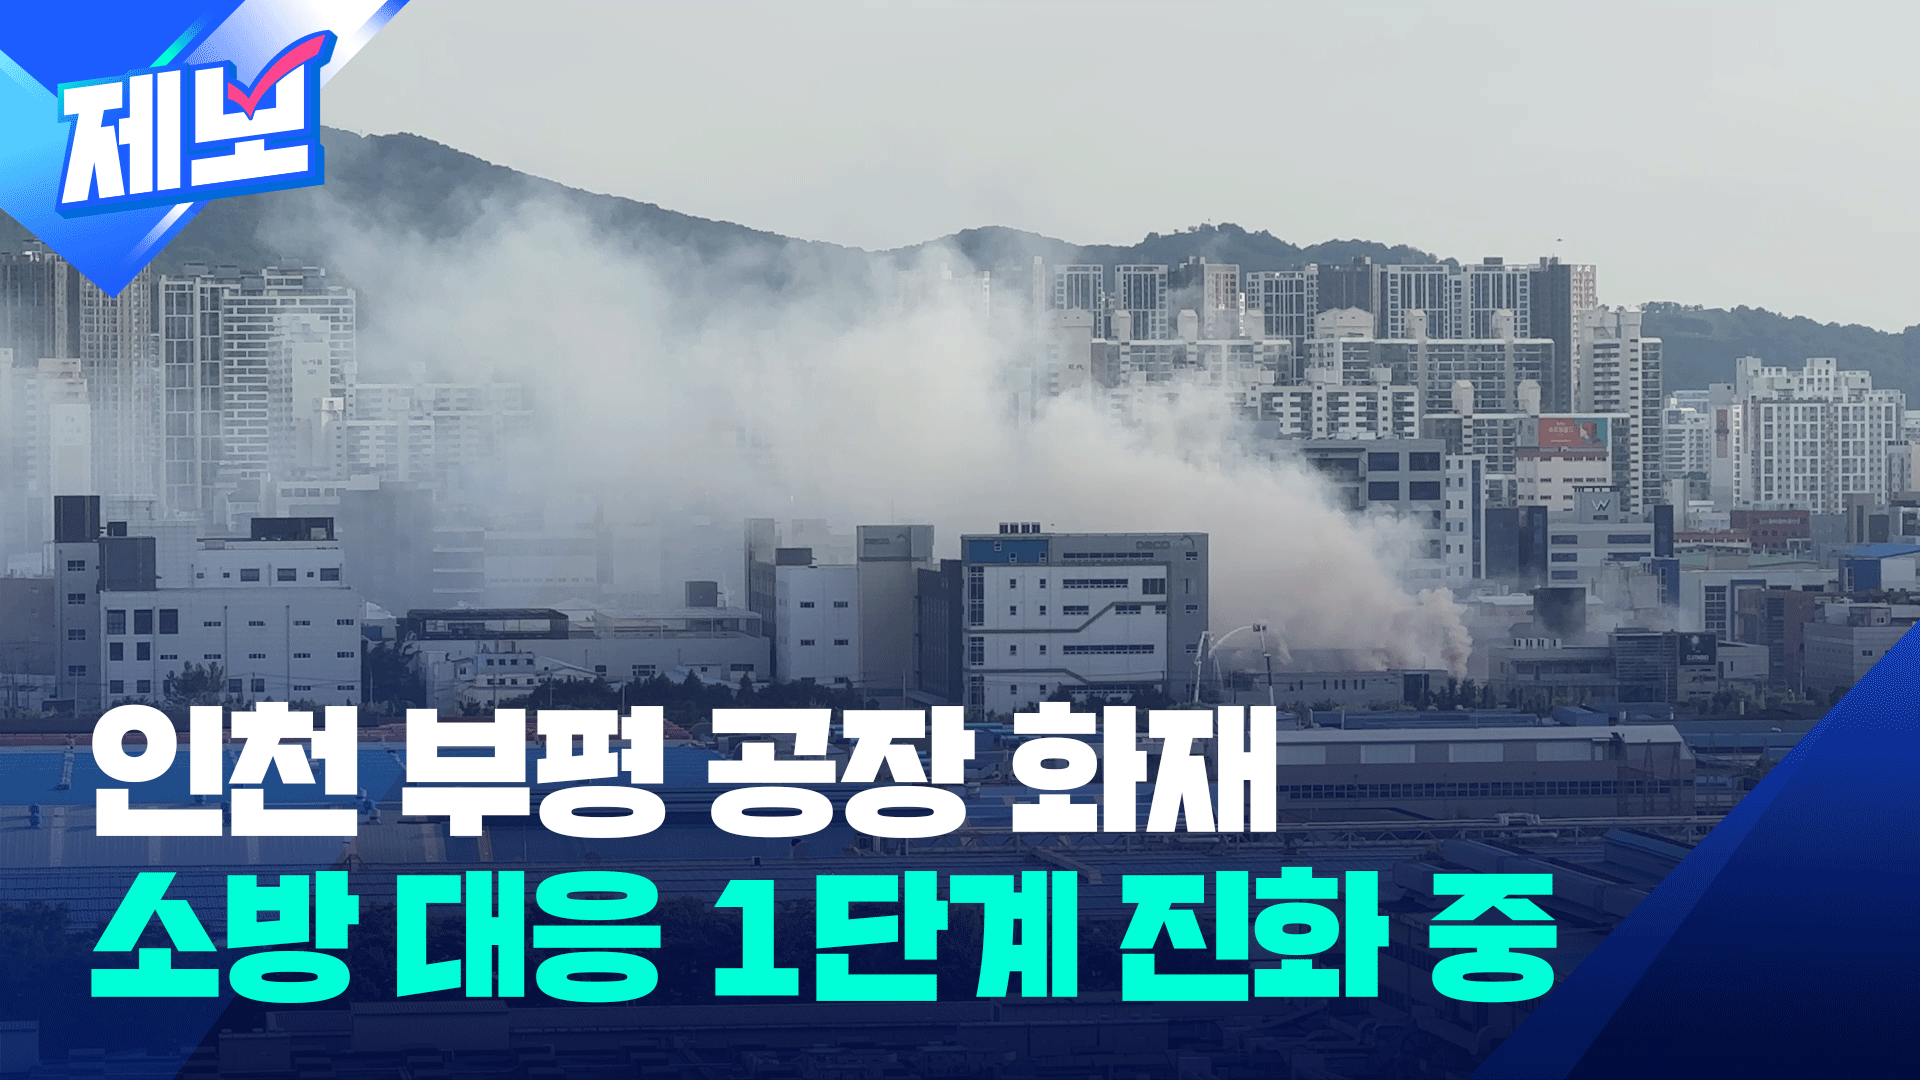 인천 조명장치 공장서 불…소방당국 대응 1단계 발령